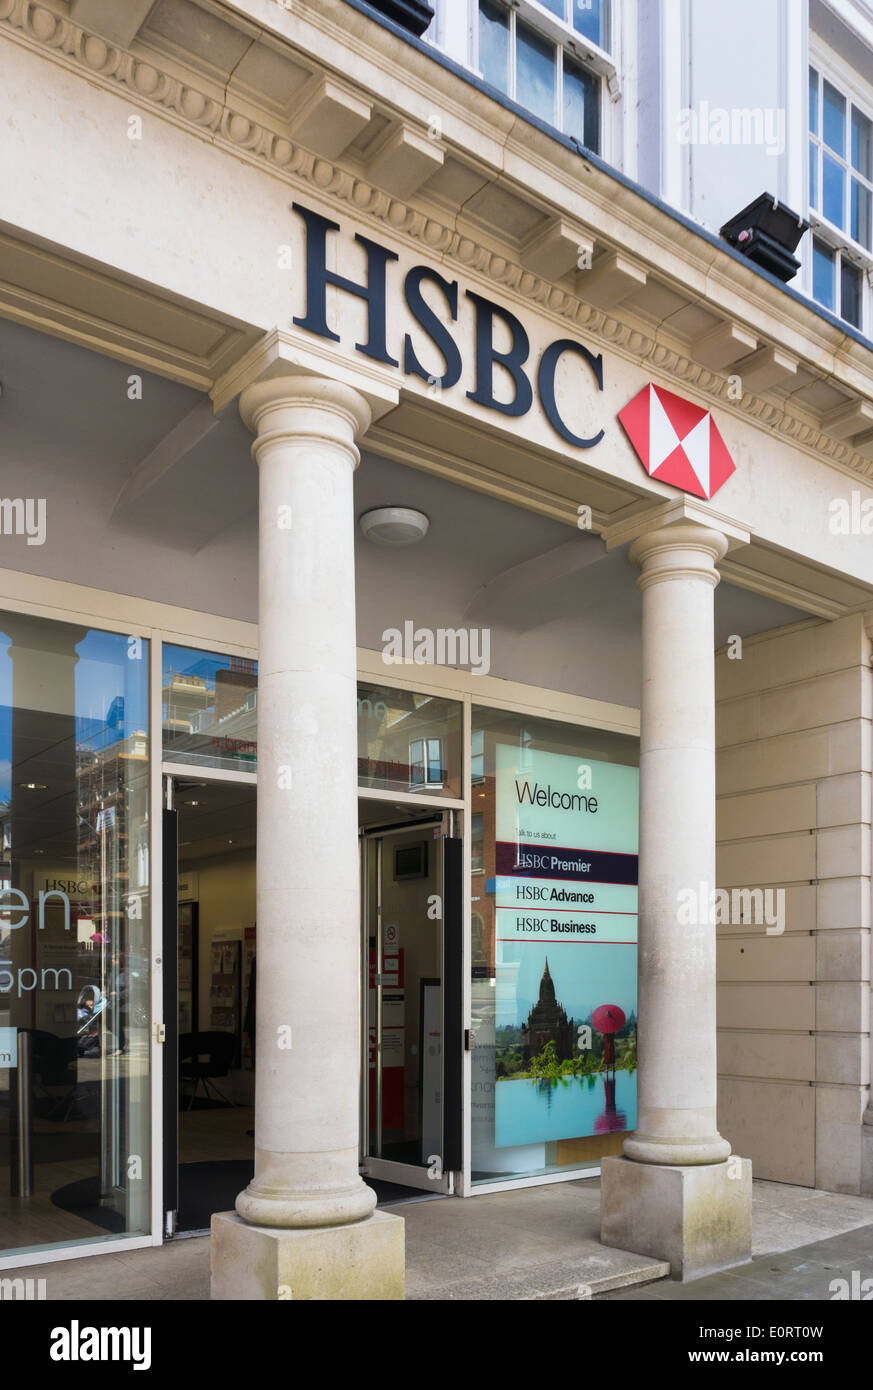 HSBC bank, England, UK Stock Photo